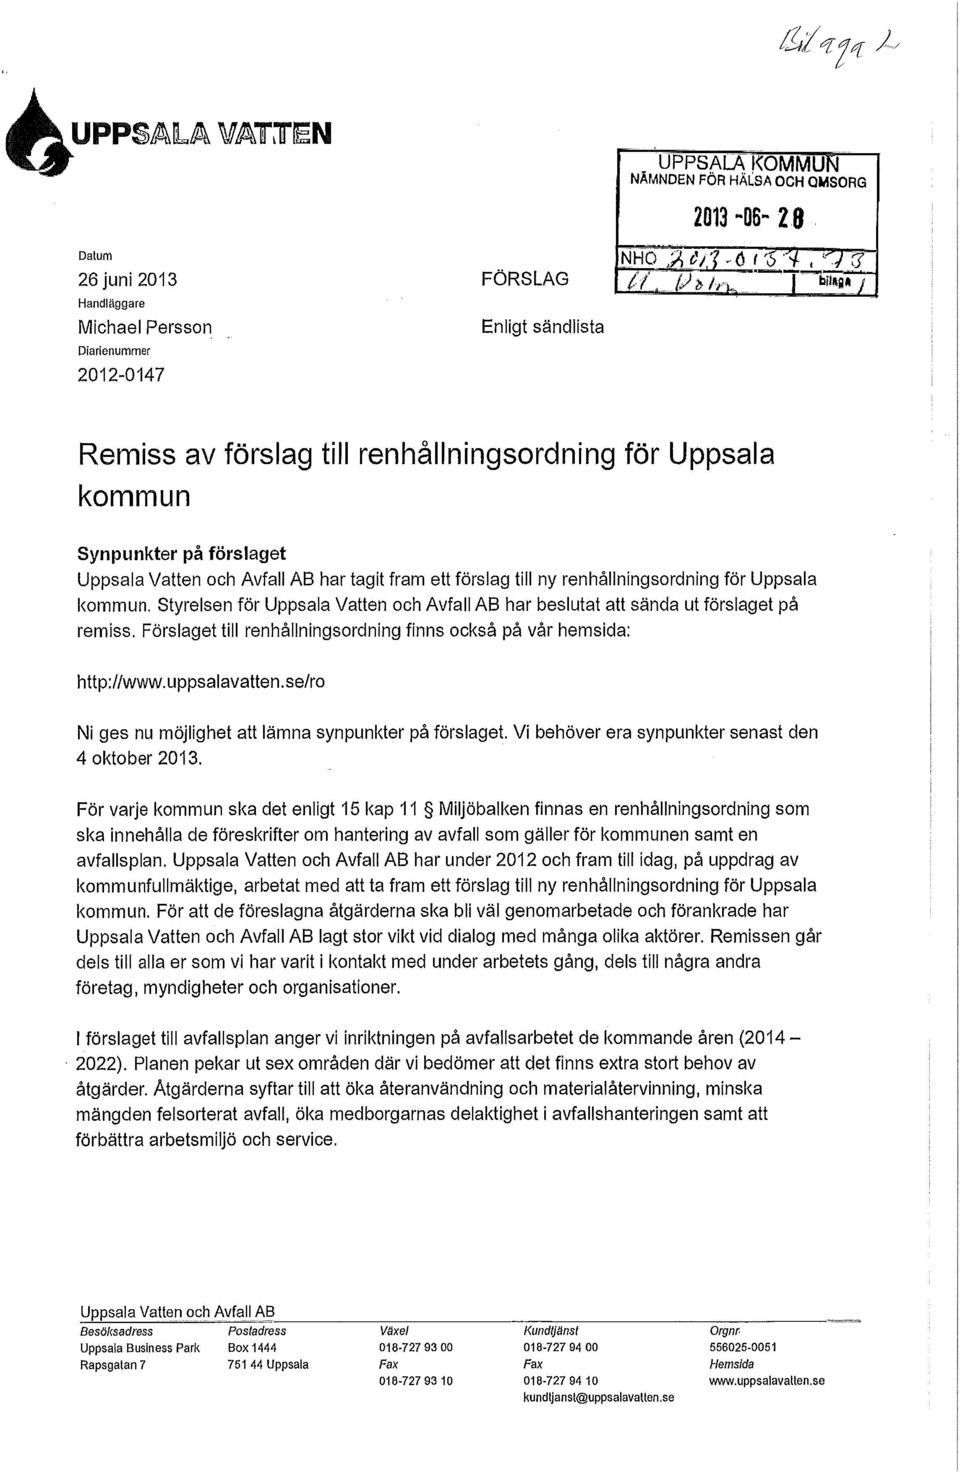 Styrelsen för Uppsala Vatten och Avfall AB har beslutat att sända ut förslaget på remiss. Förslaget till renhållningsordning finns också på vår hemsida: http://www.uppsalavatten.